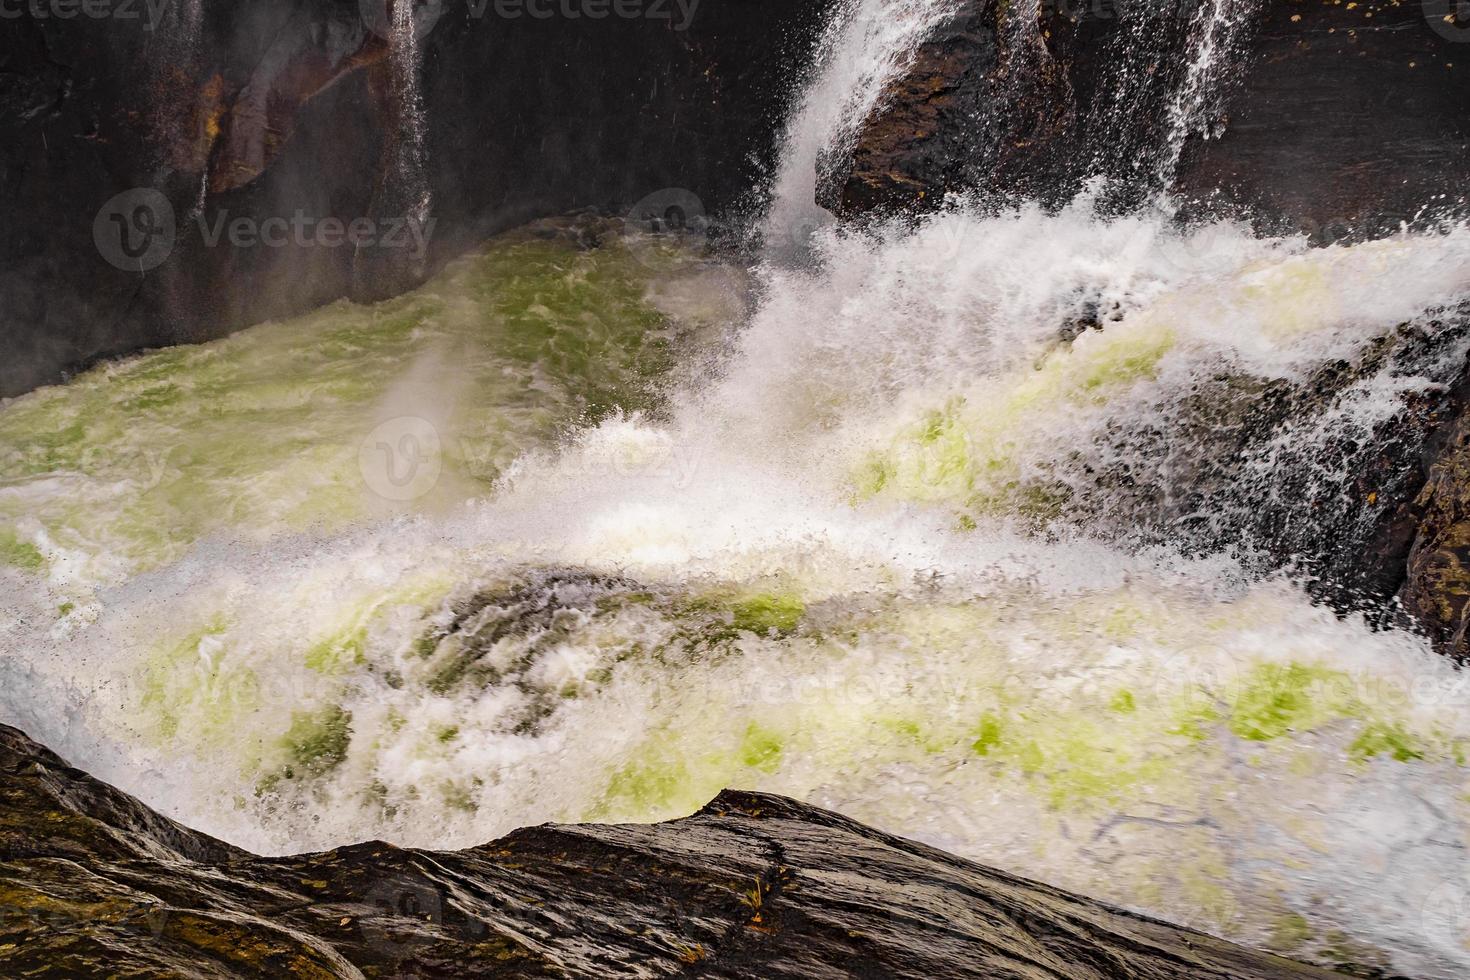 Río que fluye rápido en las cascadas rjukandefossen, hemsedal, Noruega foto